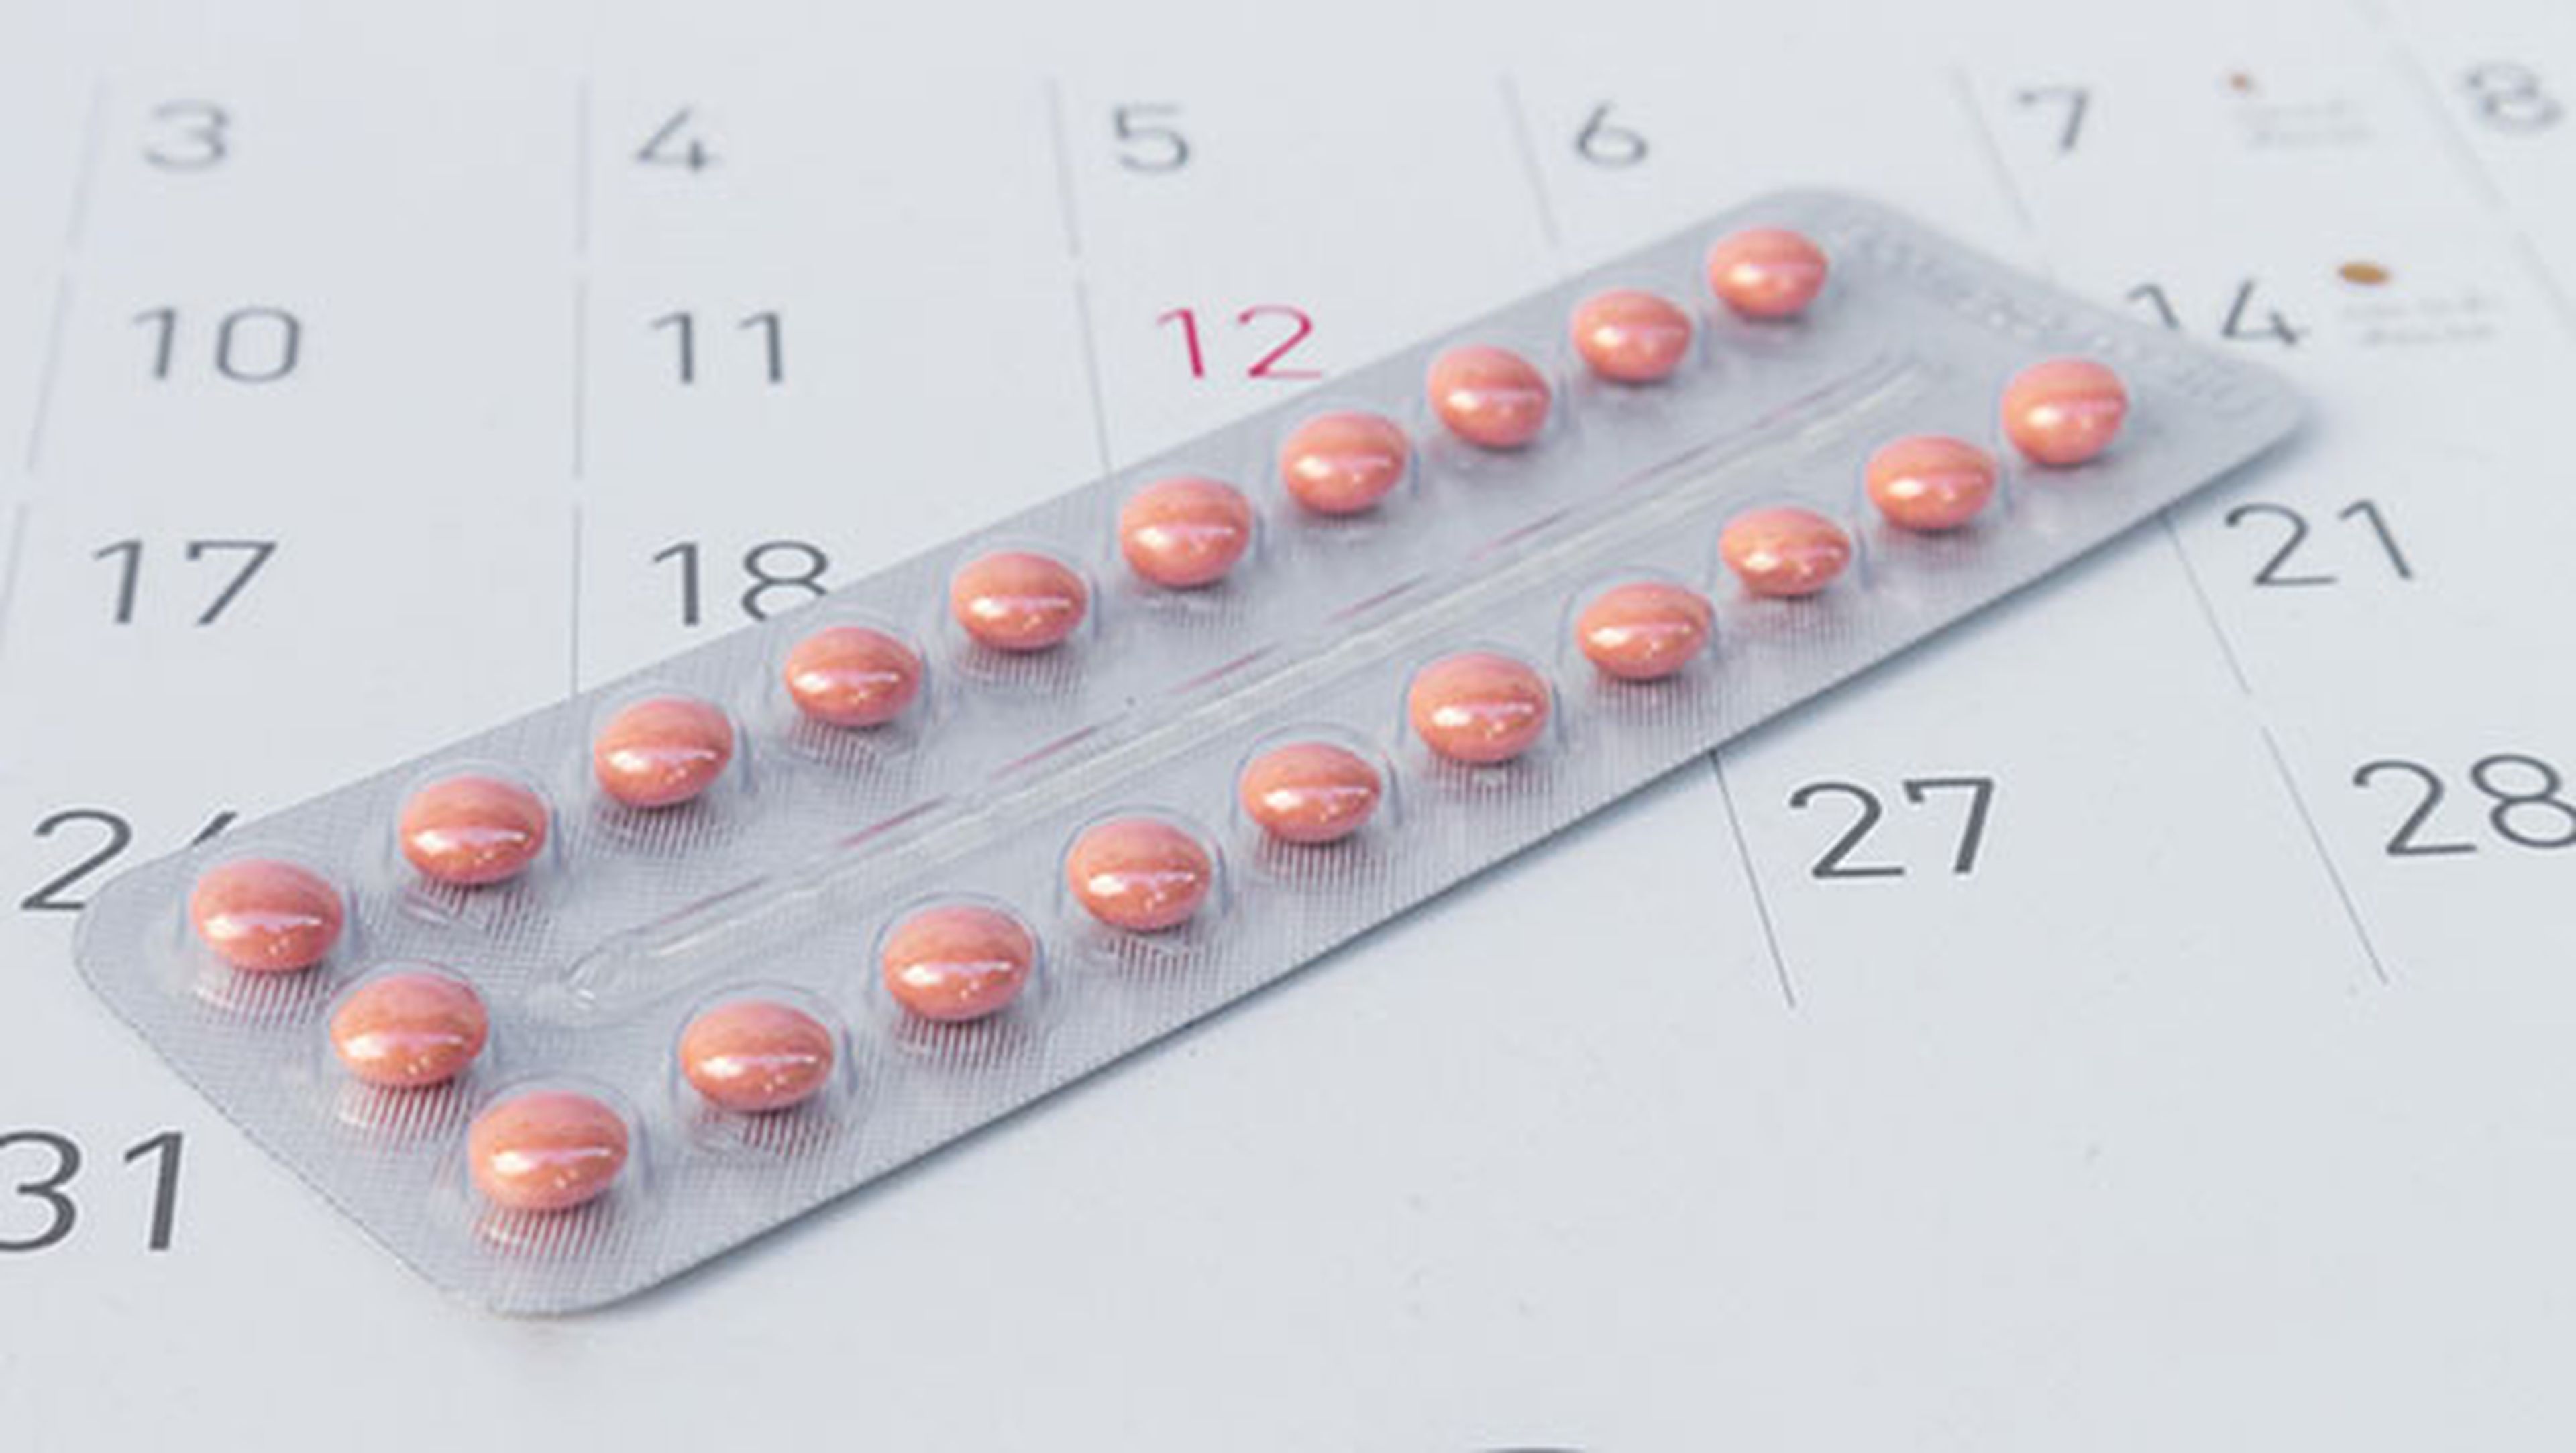 pildora anticonceptiva